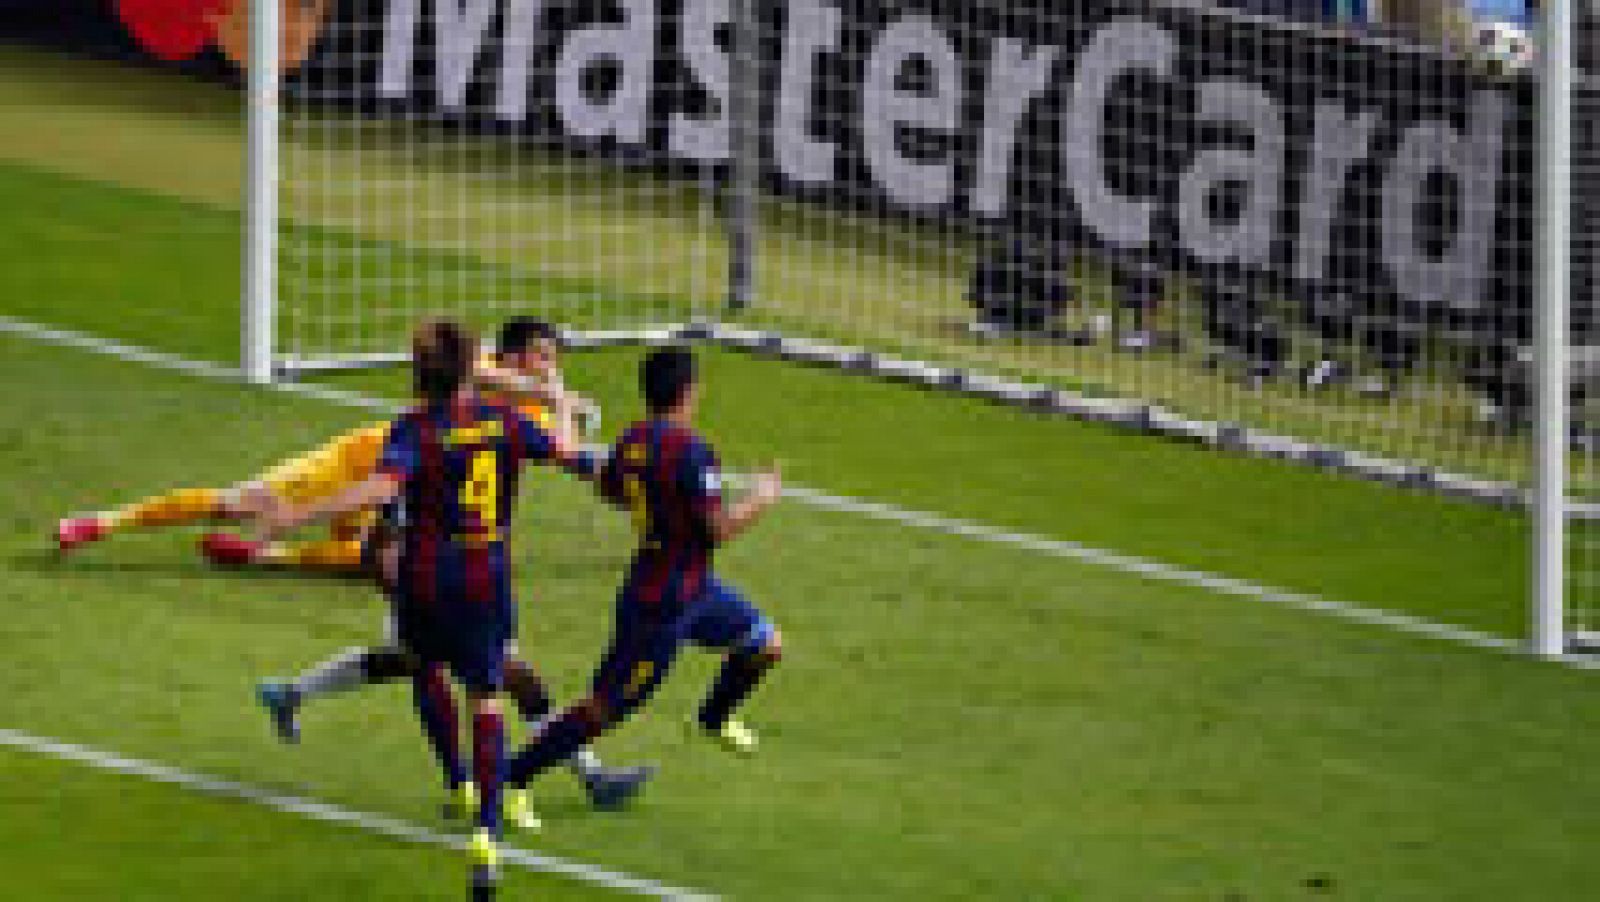 Cuando la Juve estaba apretando al Barça apareció Messi y comandó una rápida contra que finalizó con un disparo que pudo detener Buffon, pero el rechace lo cazó Luis Suárez para hacer el segundo tanto del Barcelona (1-2), en el minuto 68.